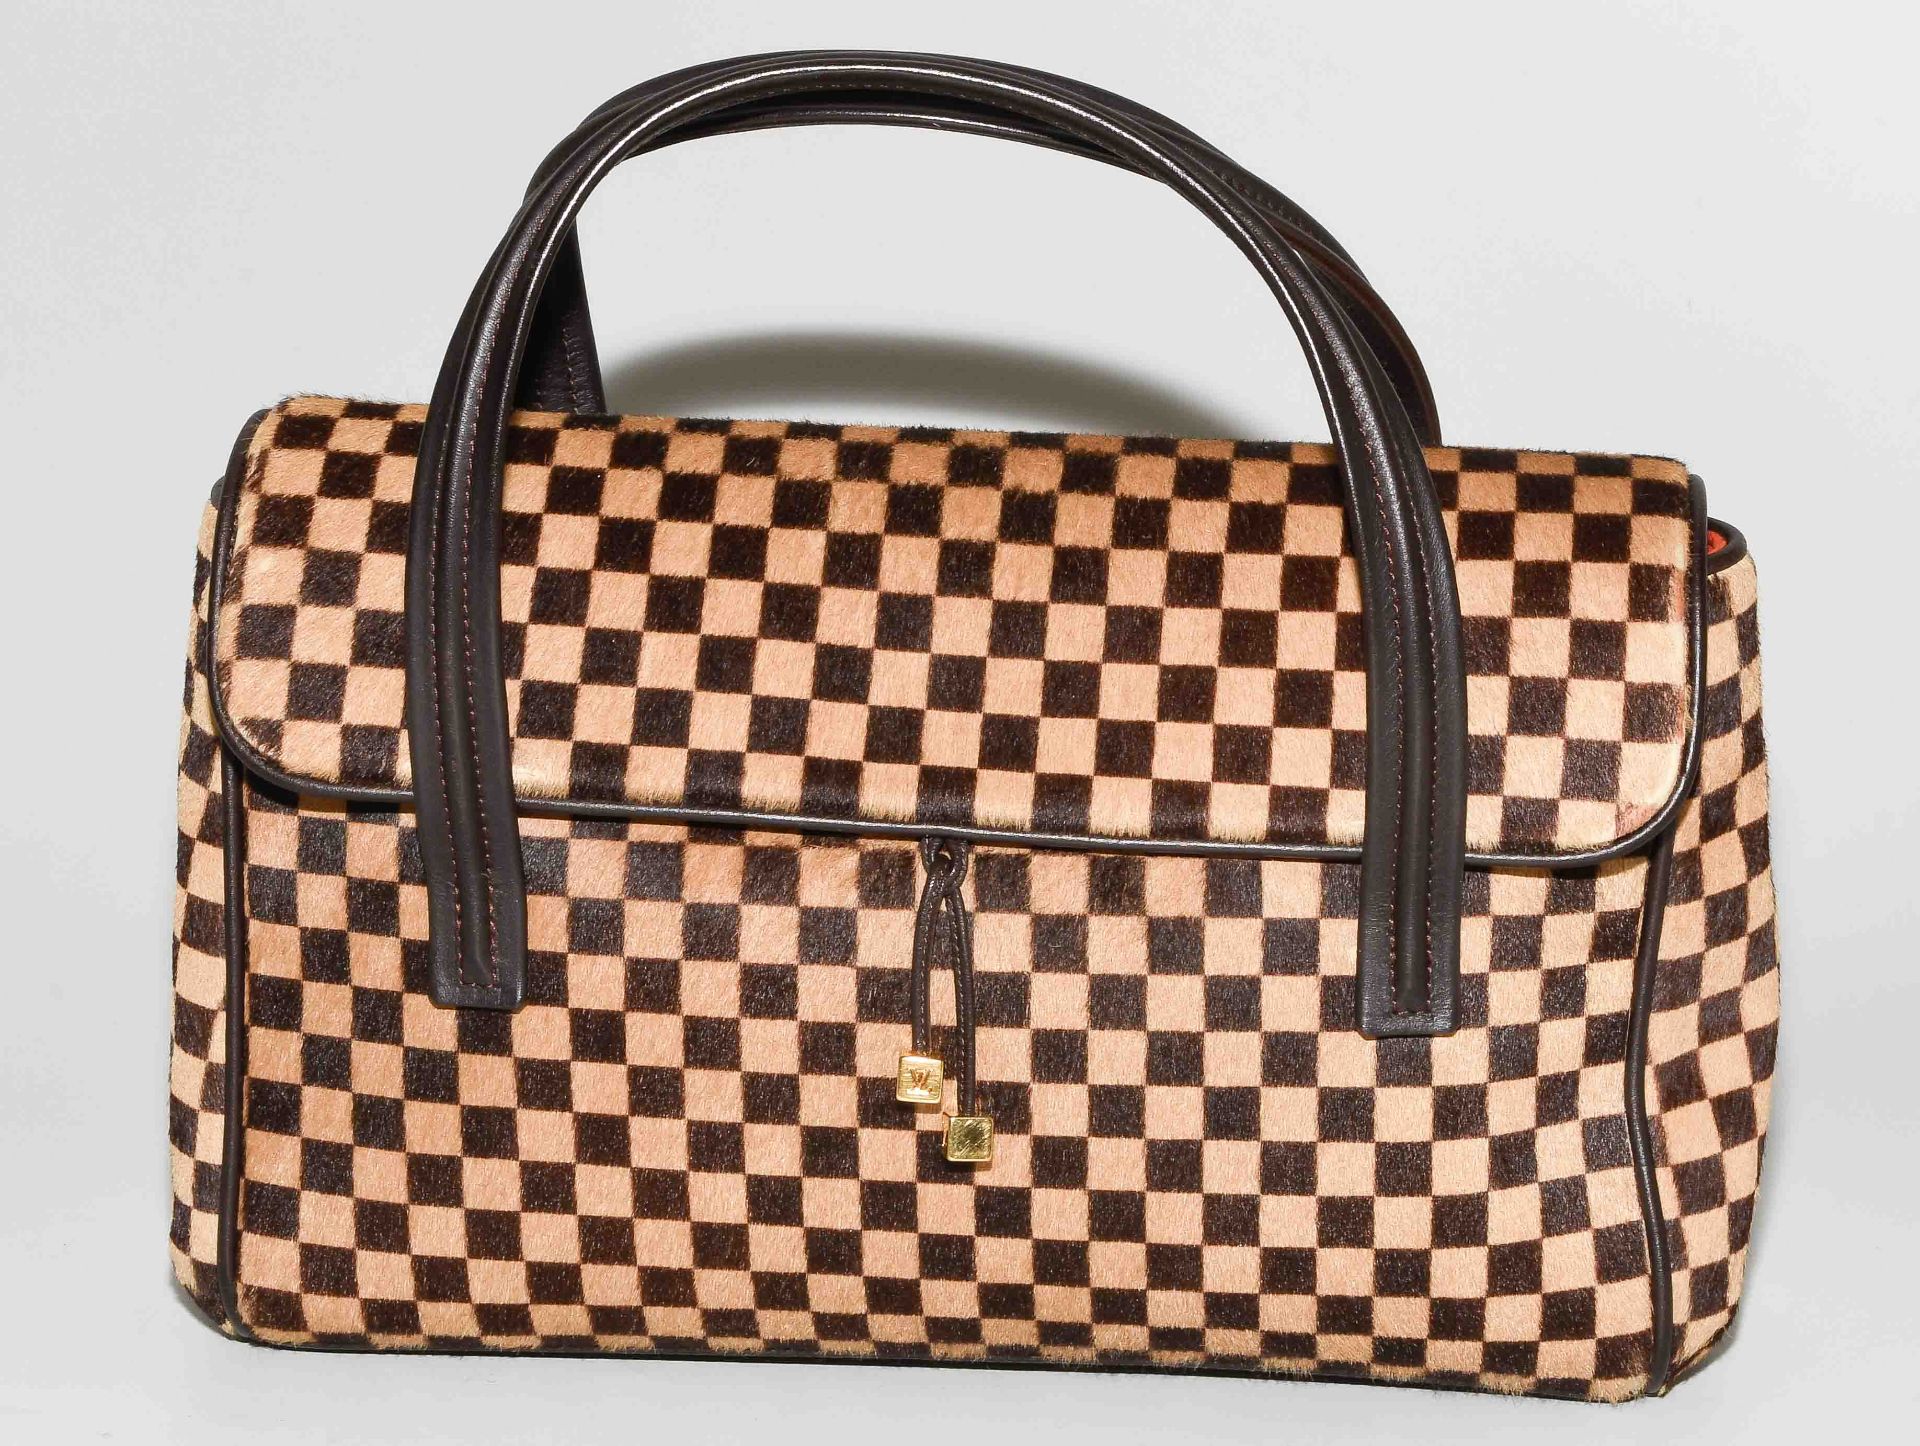 Louis Vuitton, Handtasche "Lionne" - Bild 2 aus 14